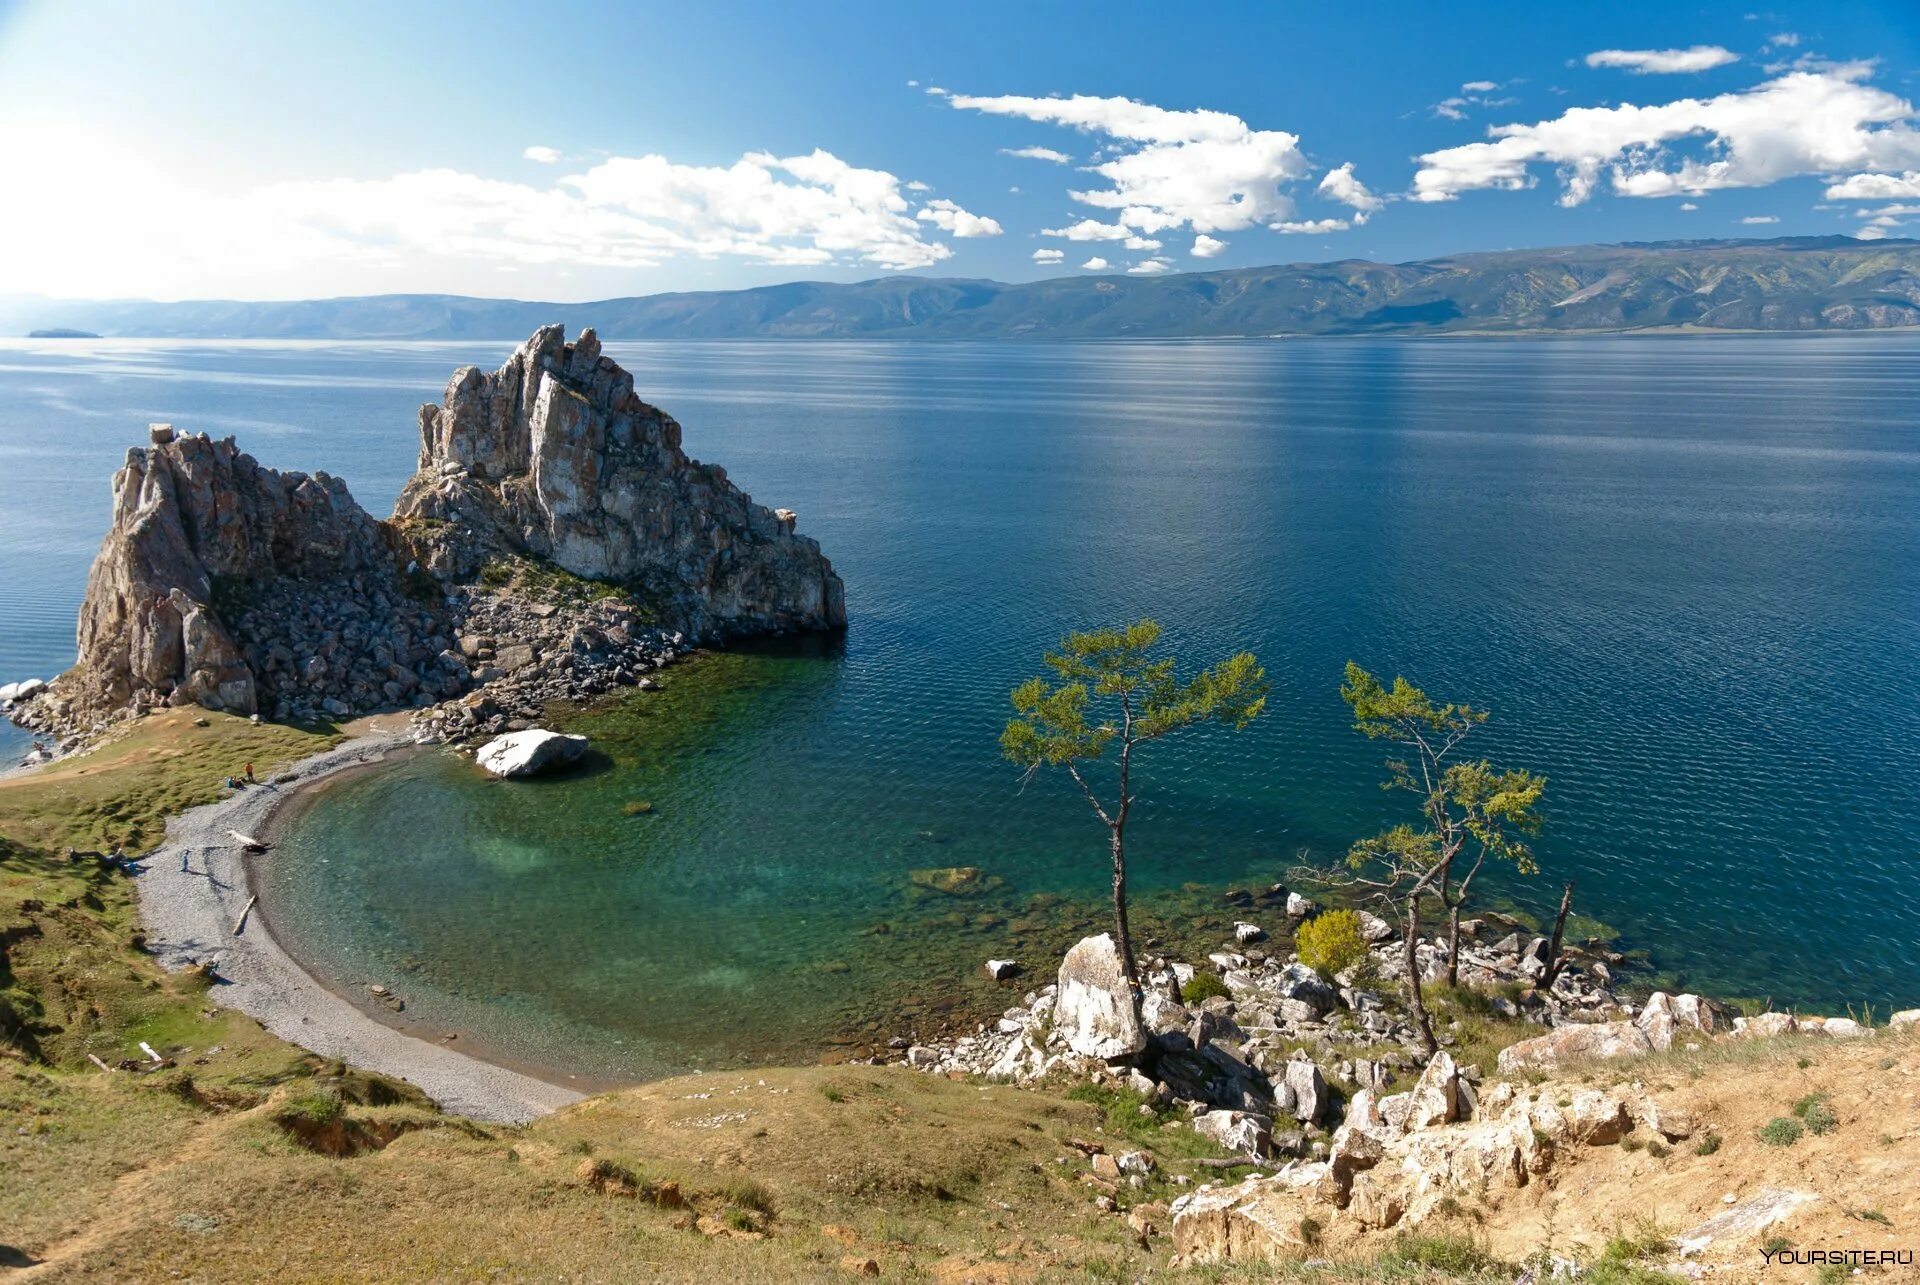 Название байкал. Остров Ольхон на Байкале. Озеро Байкал Бурятия. Остров Ольхон Восточная Сибирь. Озеро Байкал (Иркутская область, Иркутск).